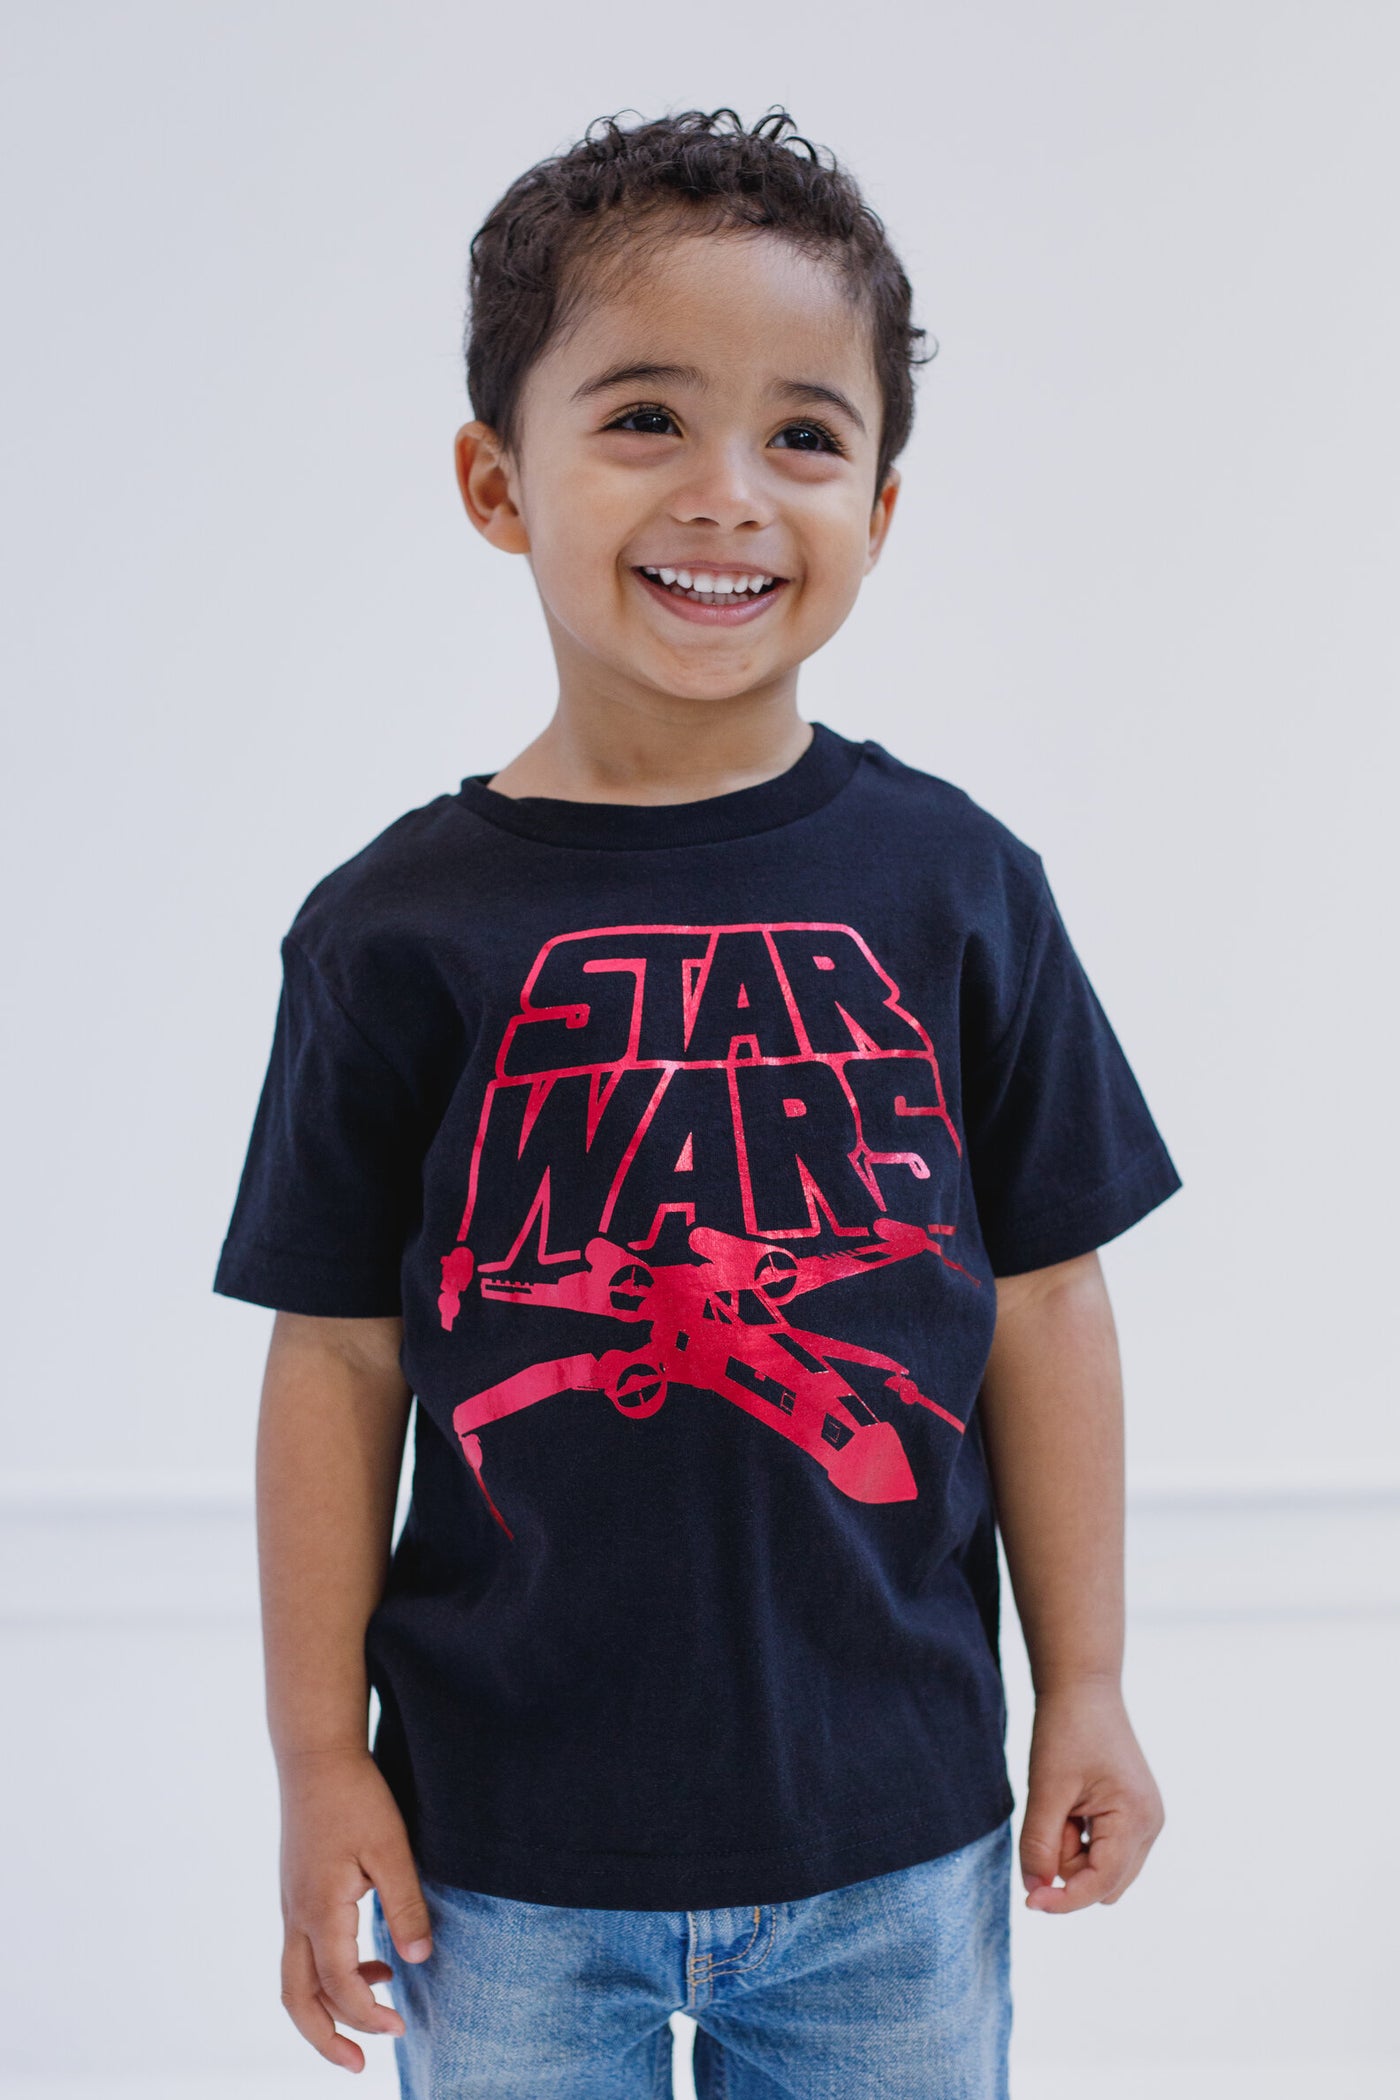 STAR WARS Star Wars X-Wing T-Shirt